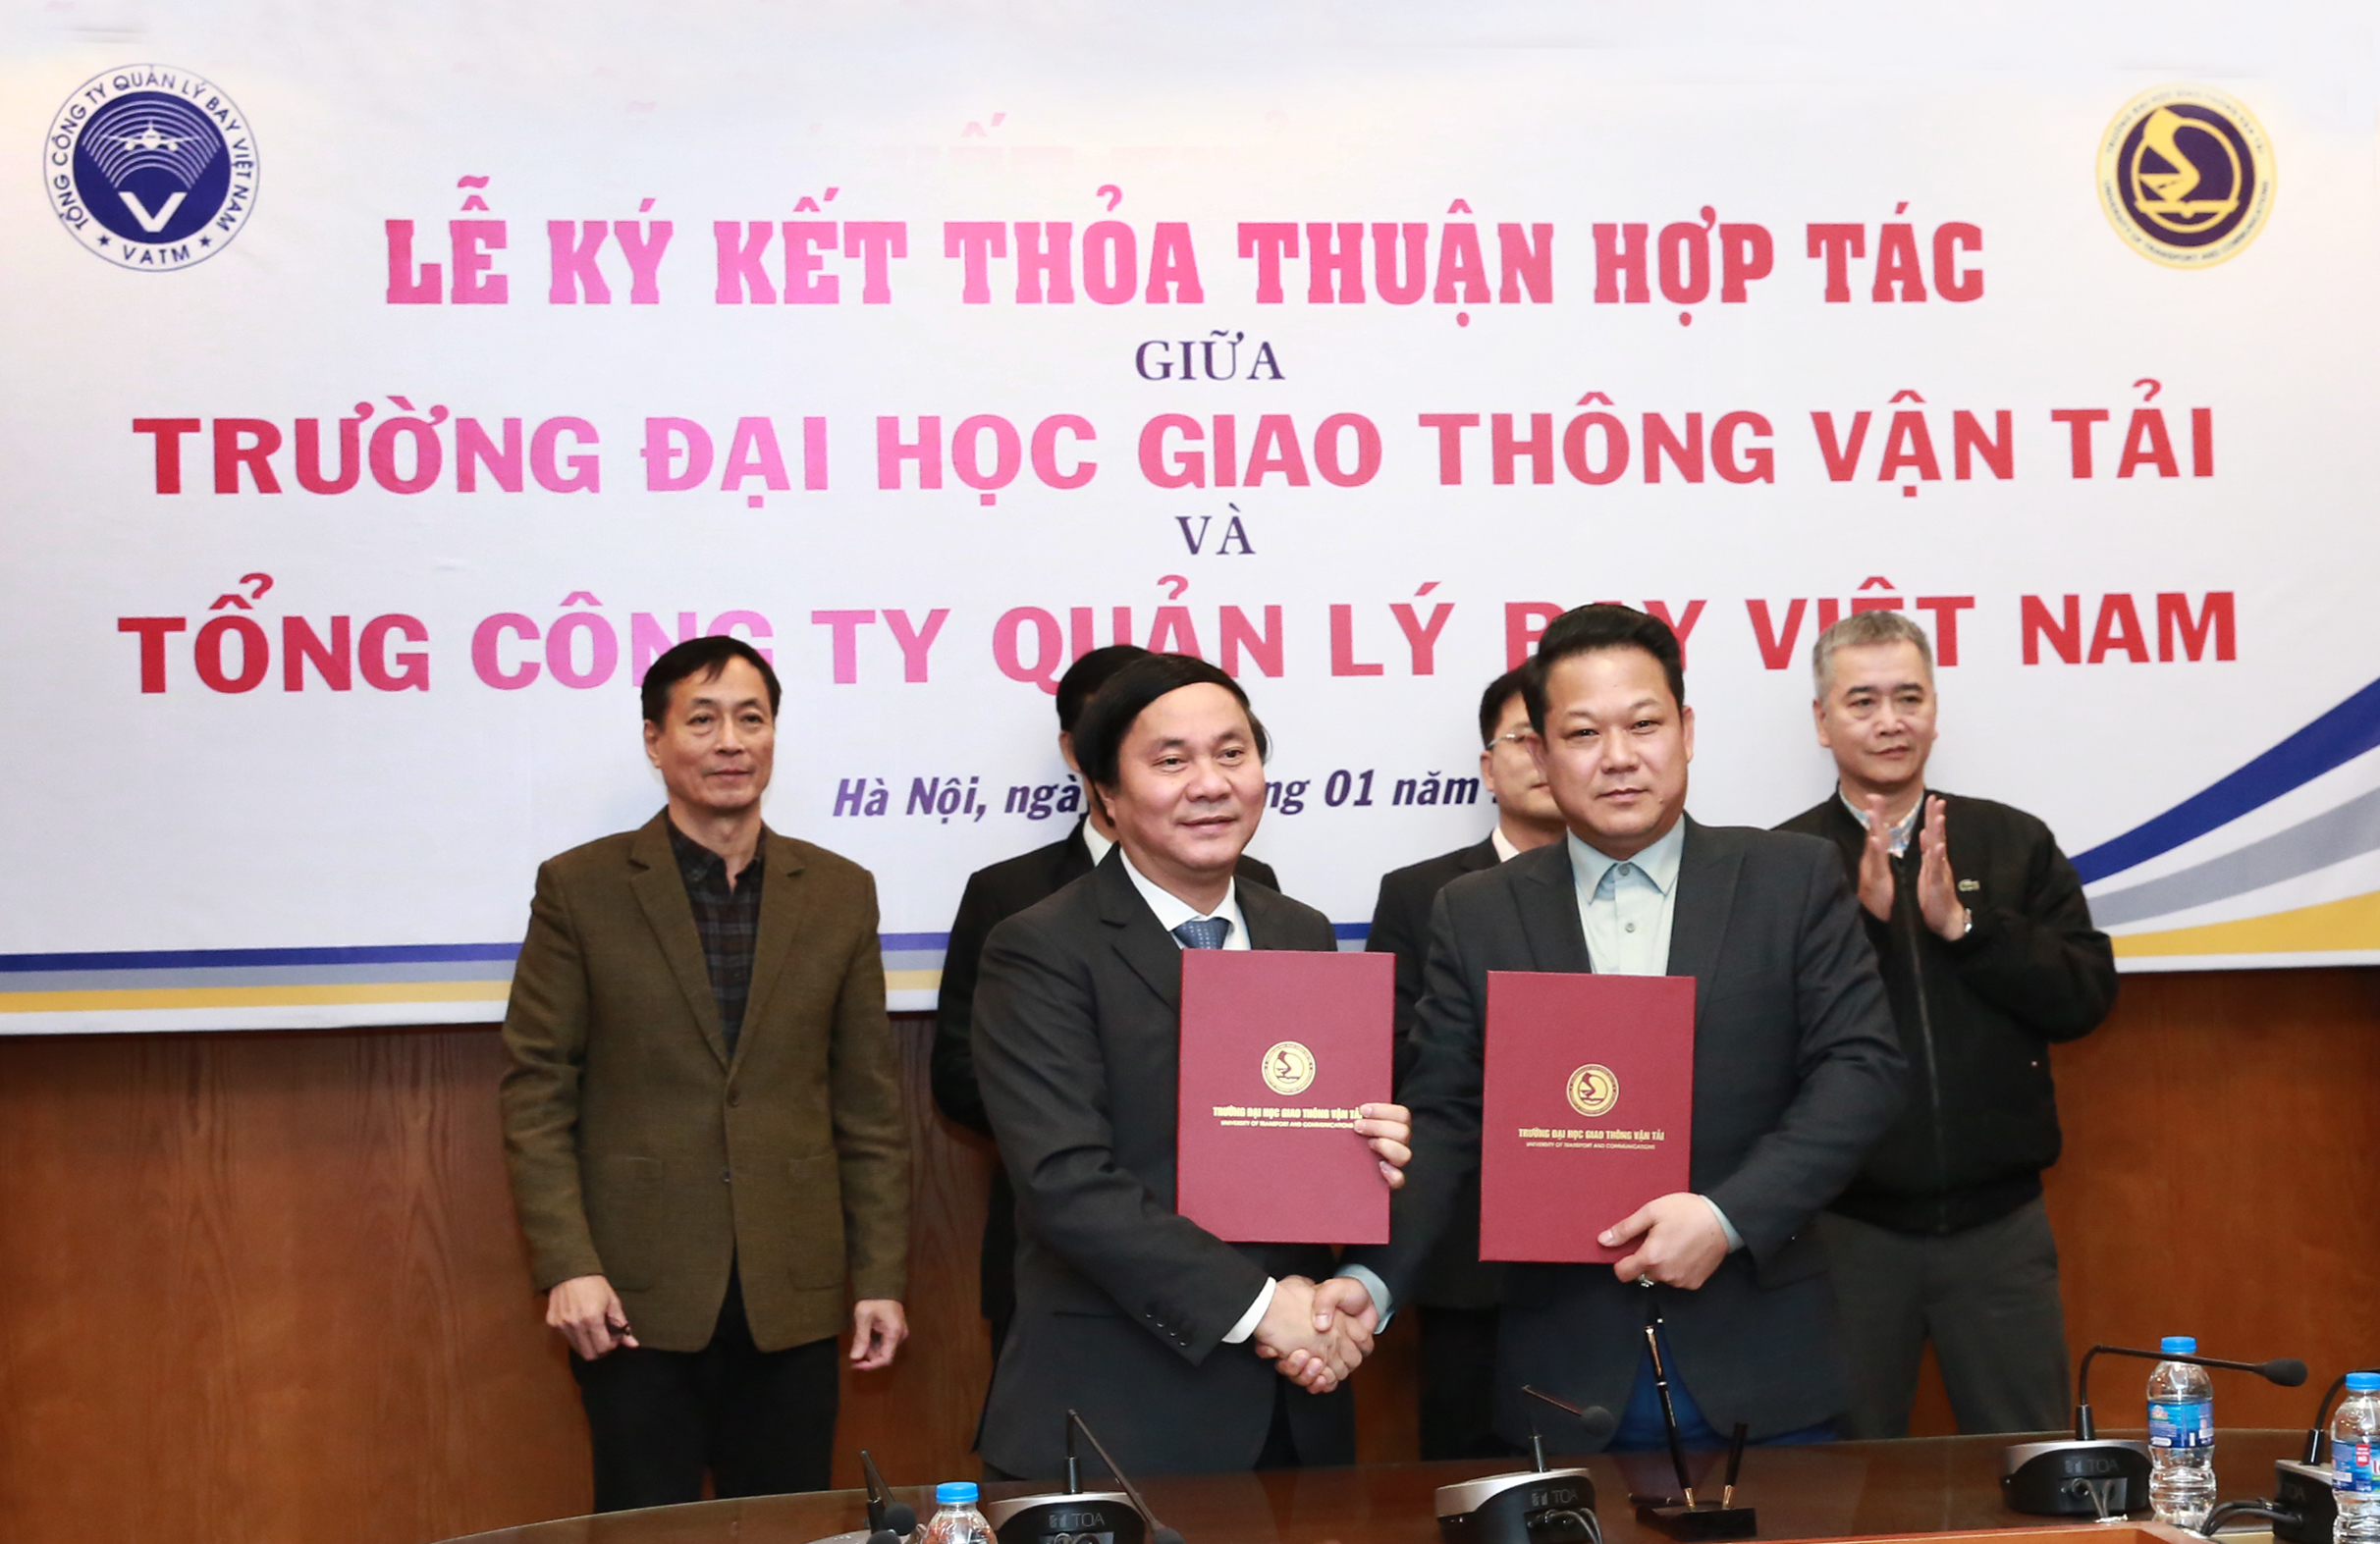 VATM và Trường Đại học Giao thông vận tải ký kết thỏa thuận hợp tác